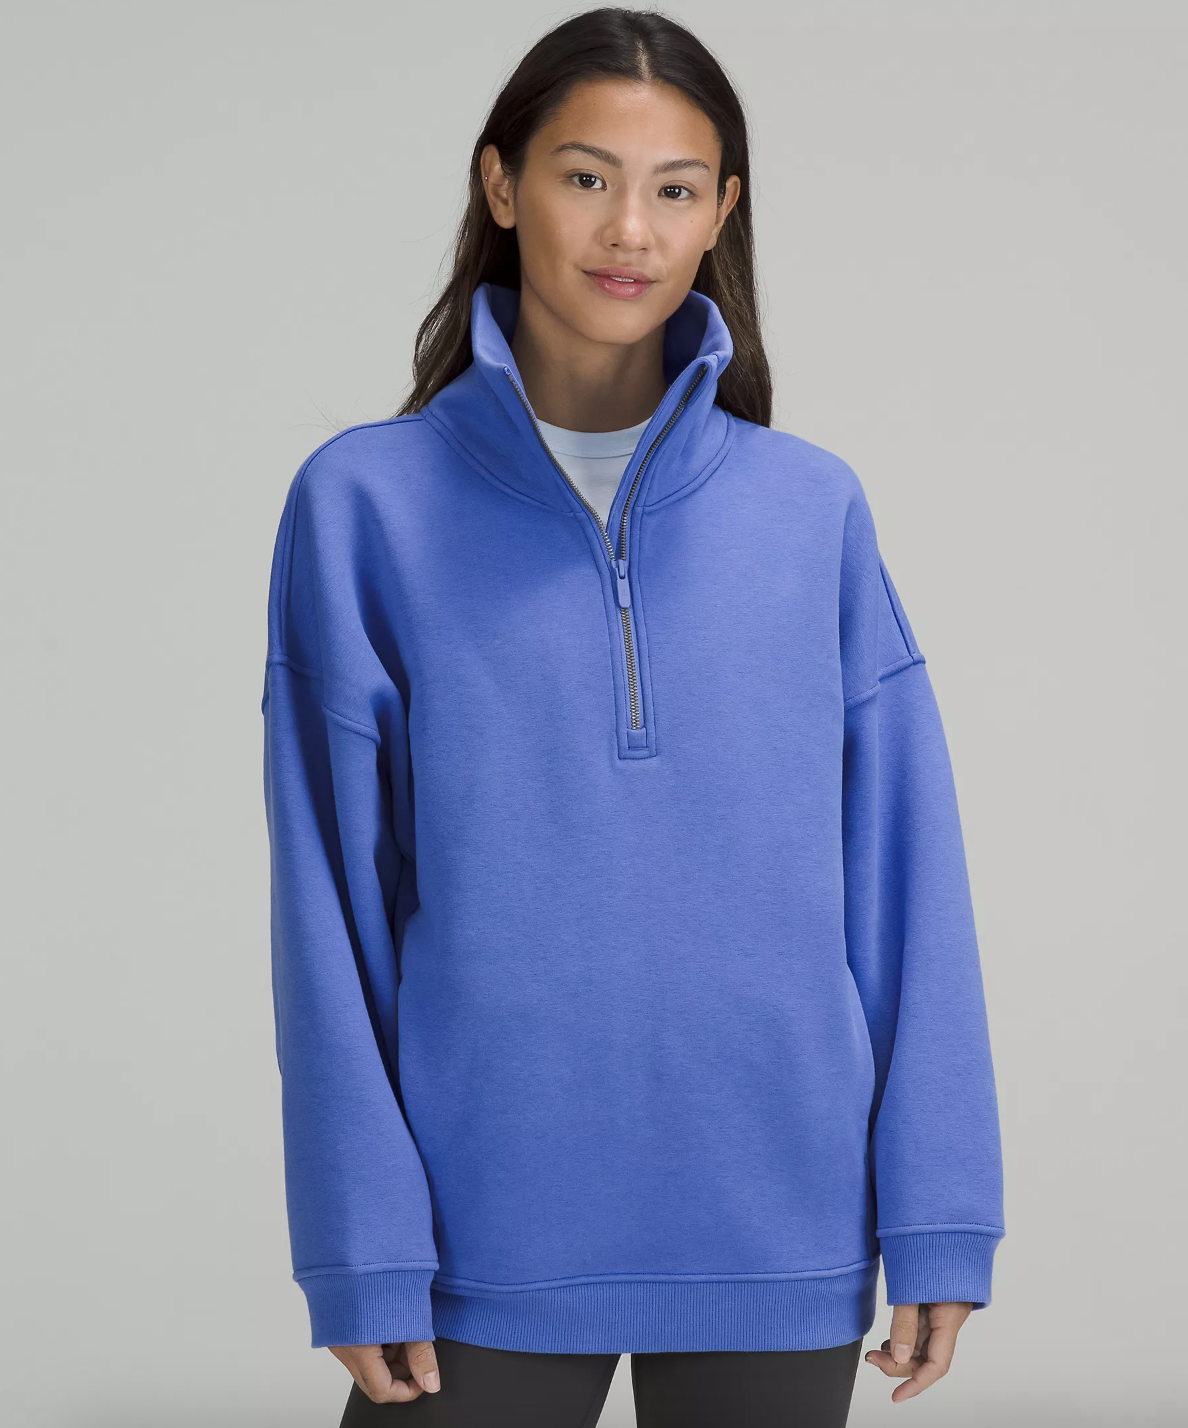 a person wearing the fleece half zip sweatshirt